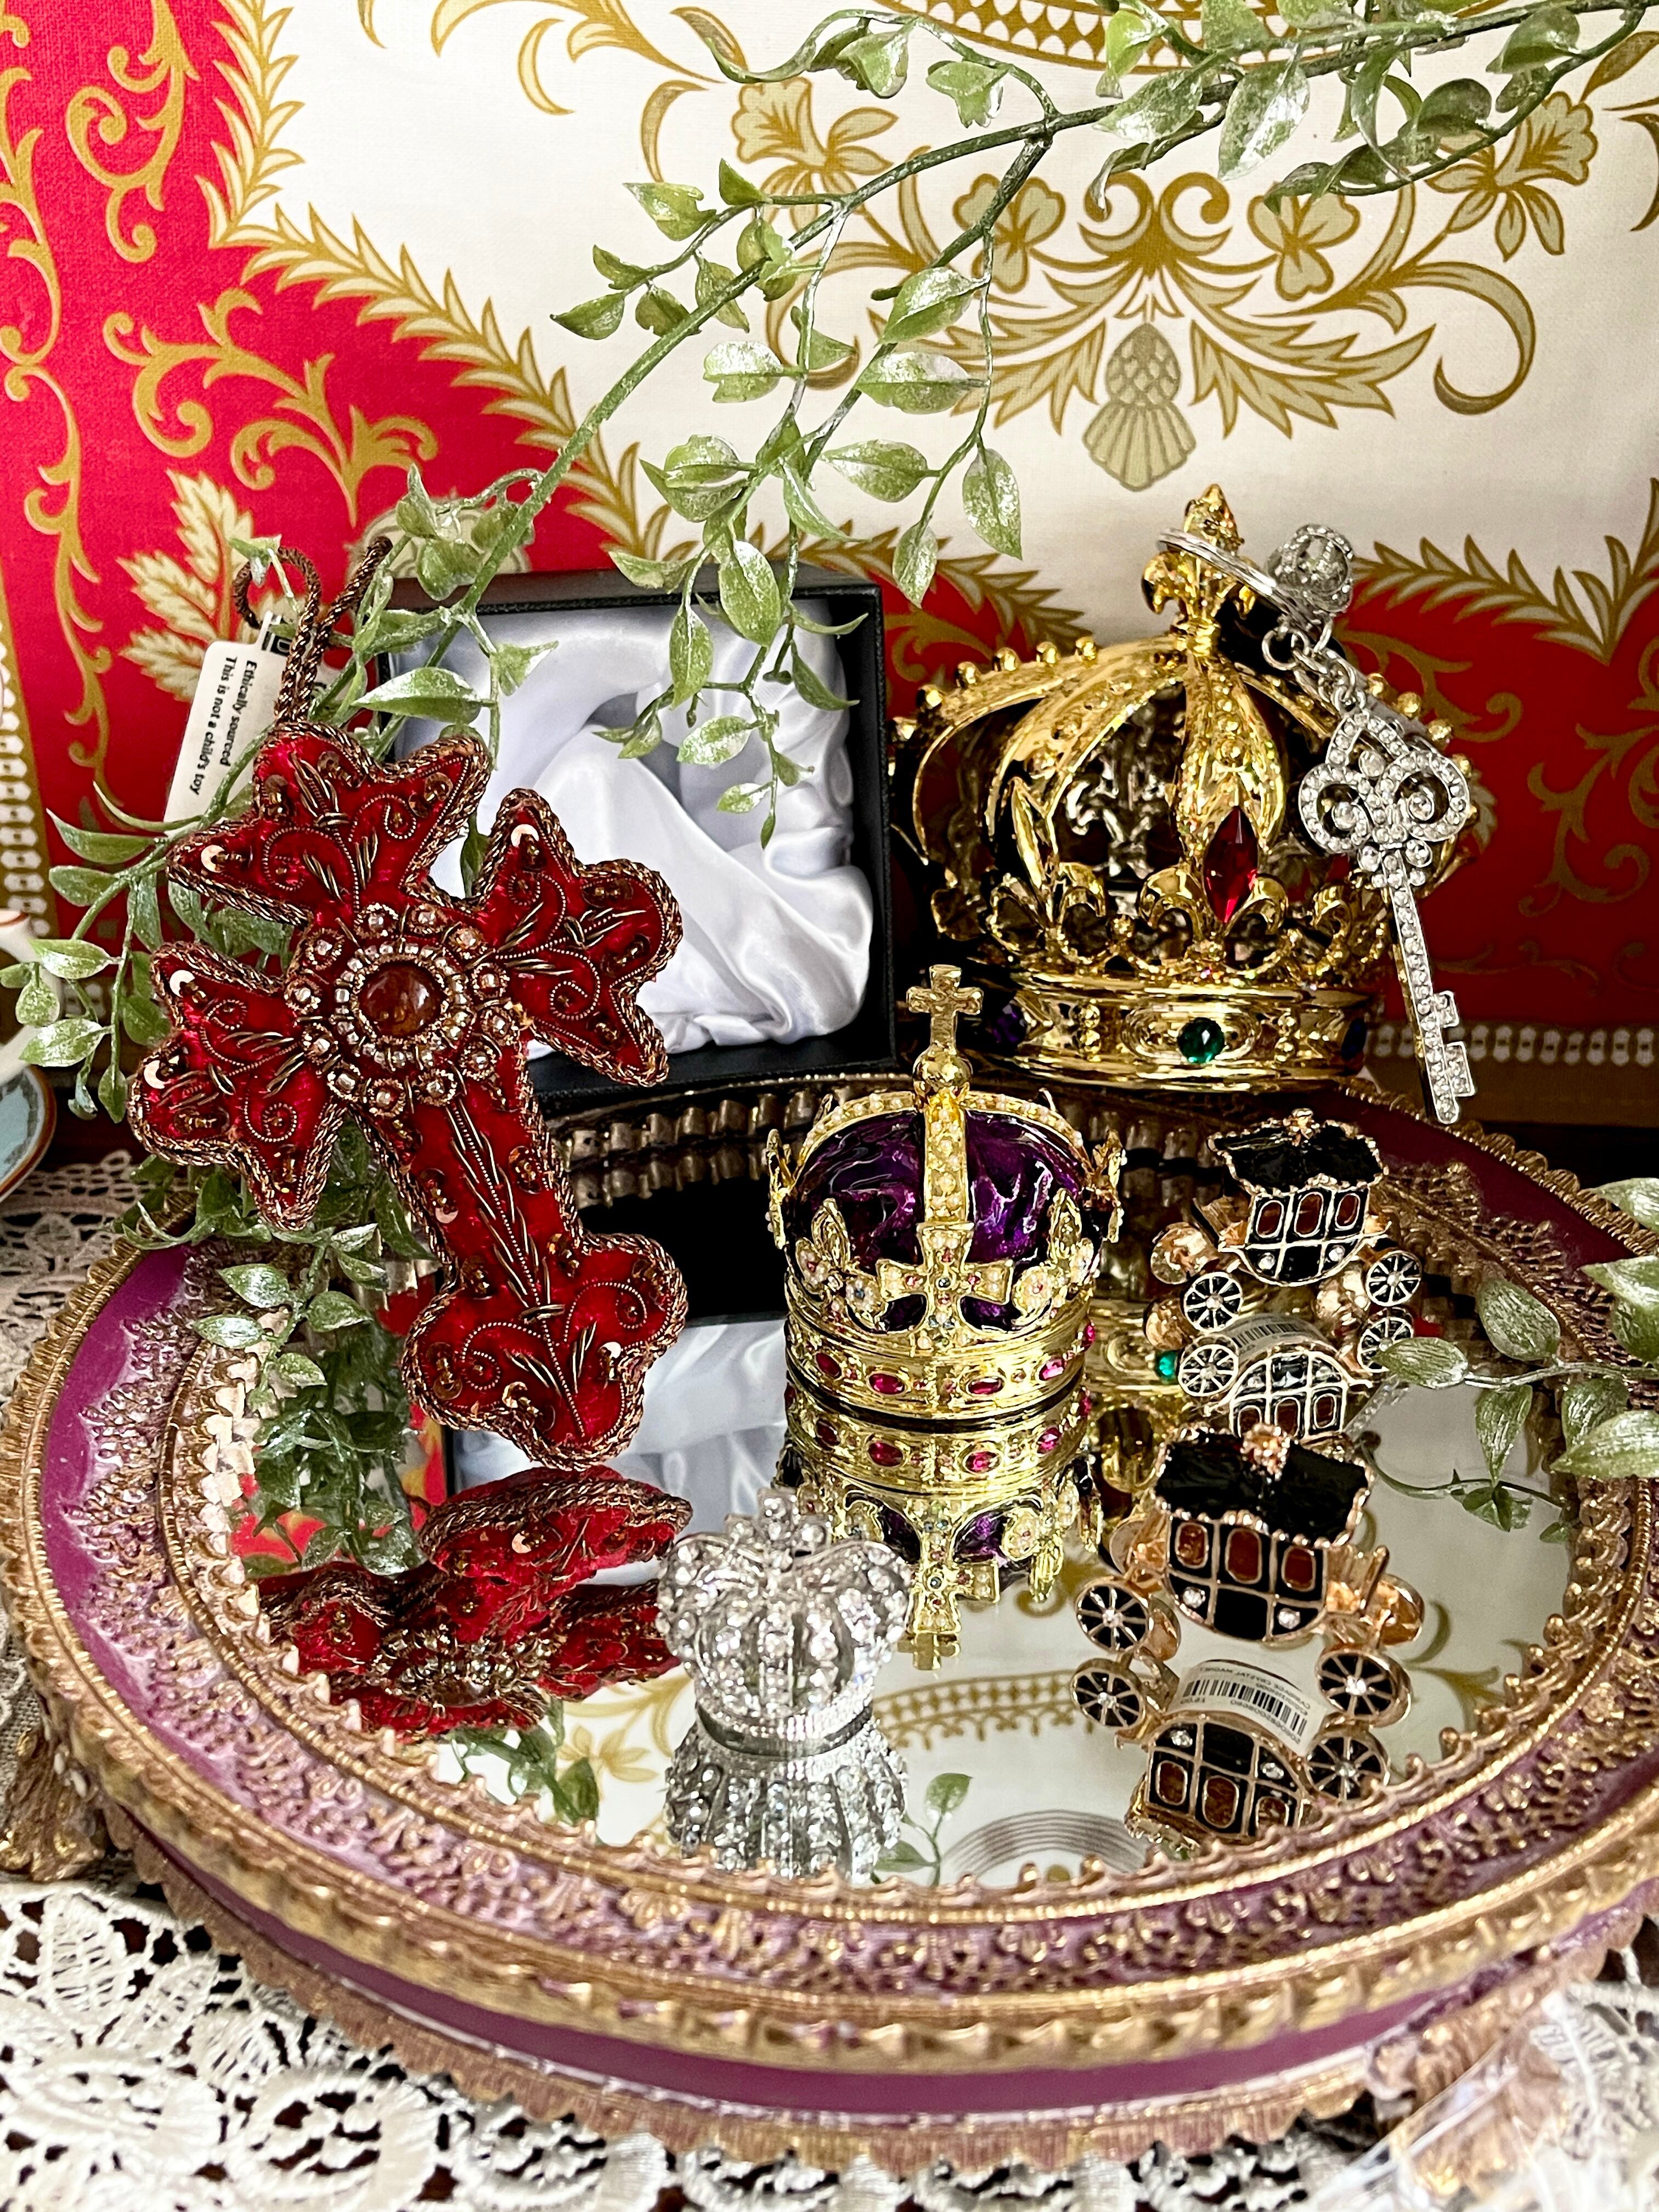 『Royal Palace』王冠 クリスタル キーリング crystal crown keyring